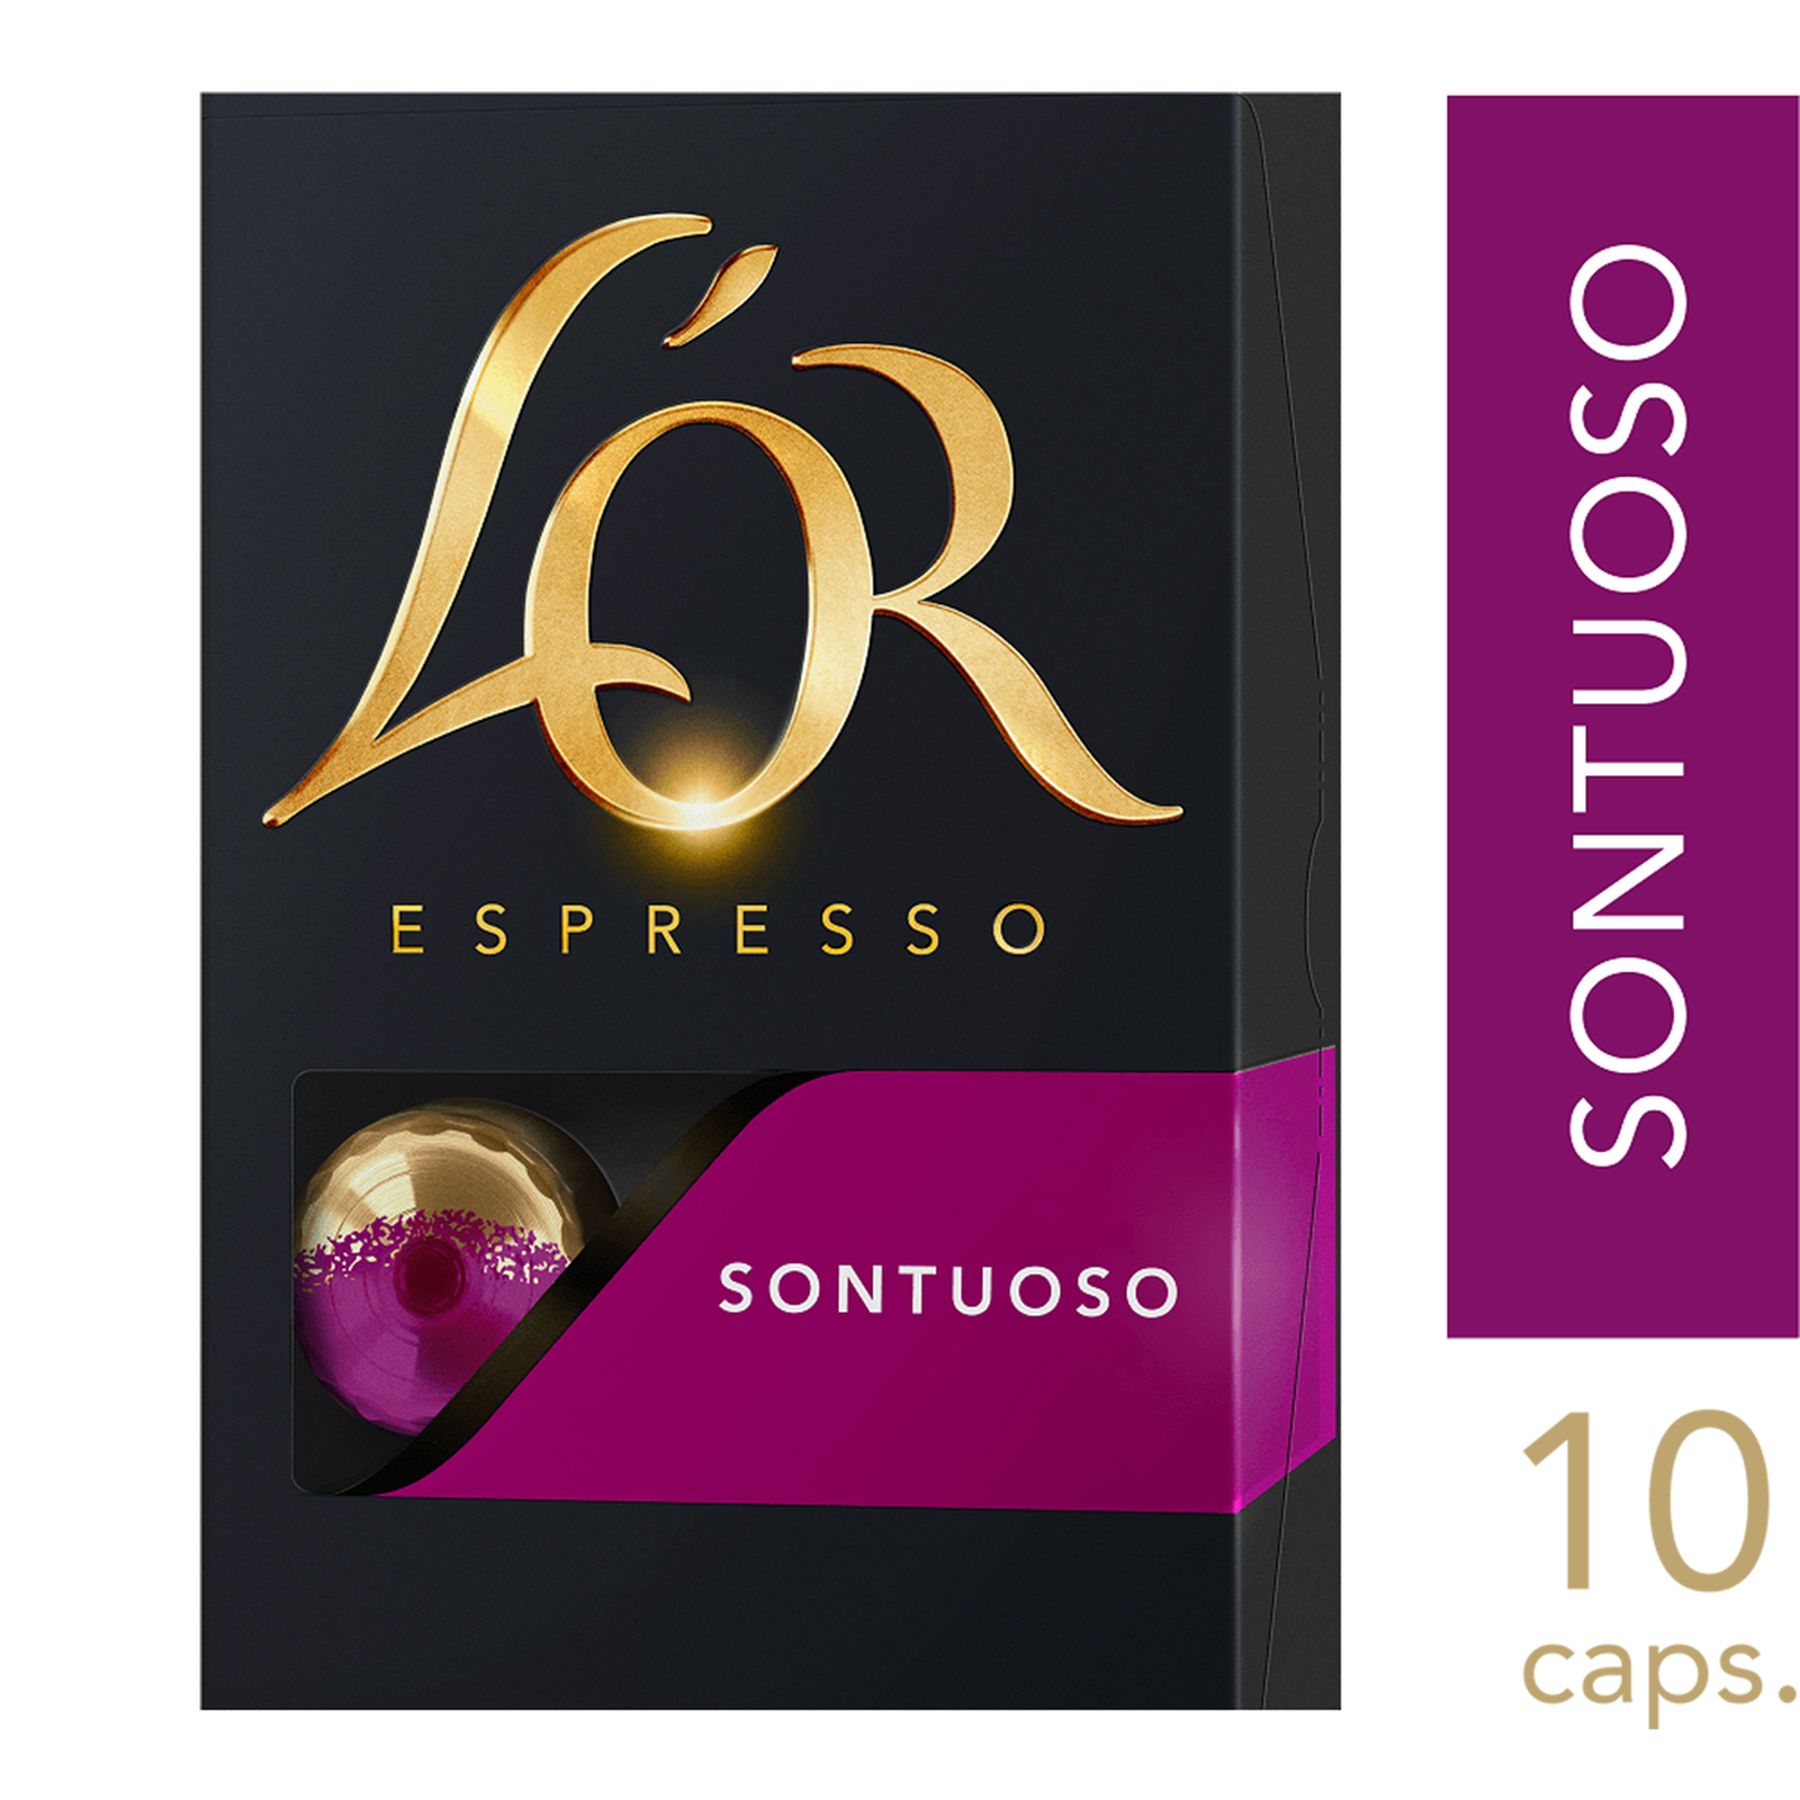 Café Espresso em Cápsula Sontuoso L'or Caixa 52g C/10 Unidades 